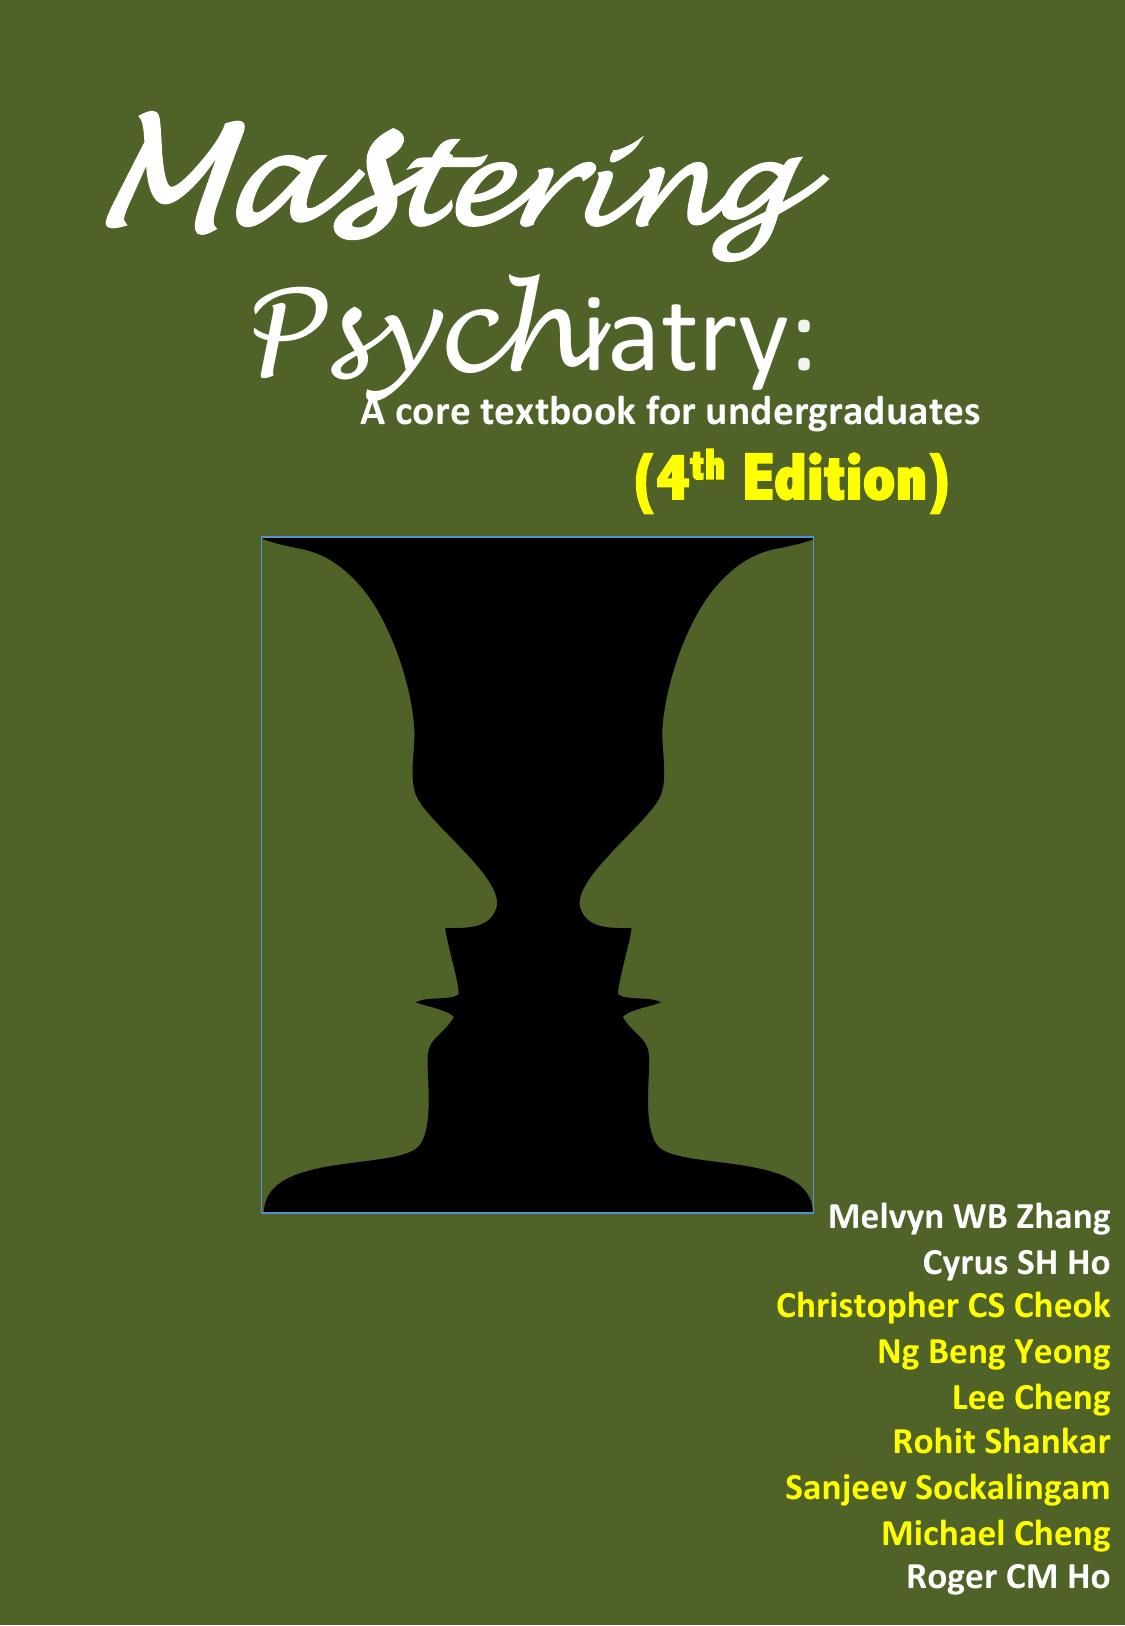 Mastering-Psychiatry-2015